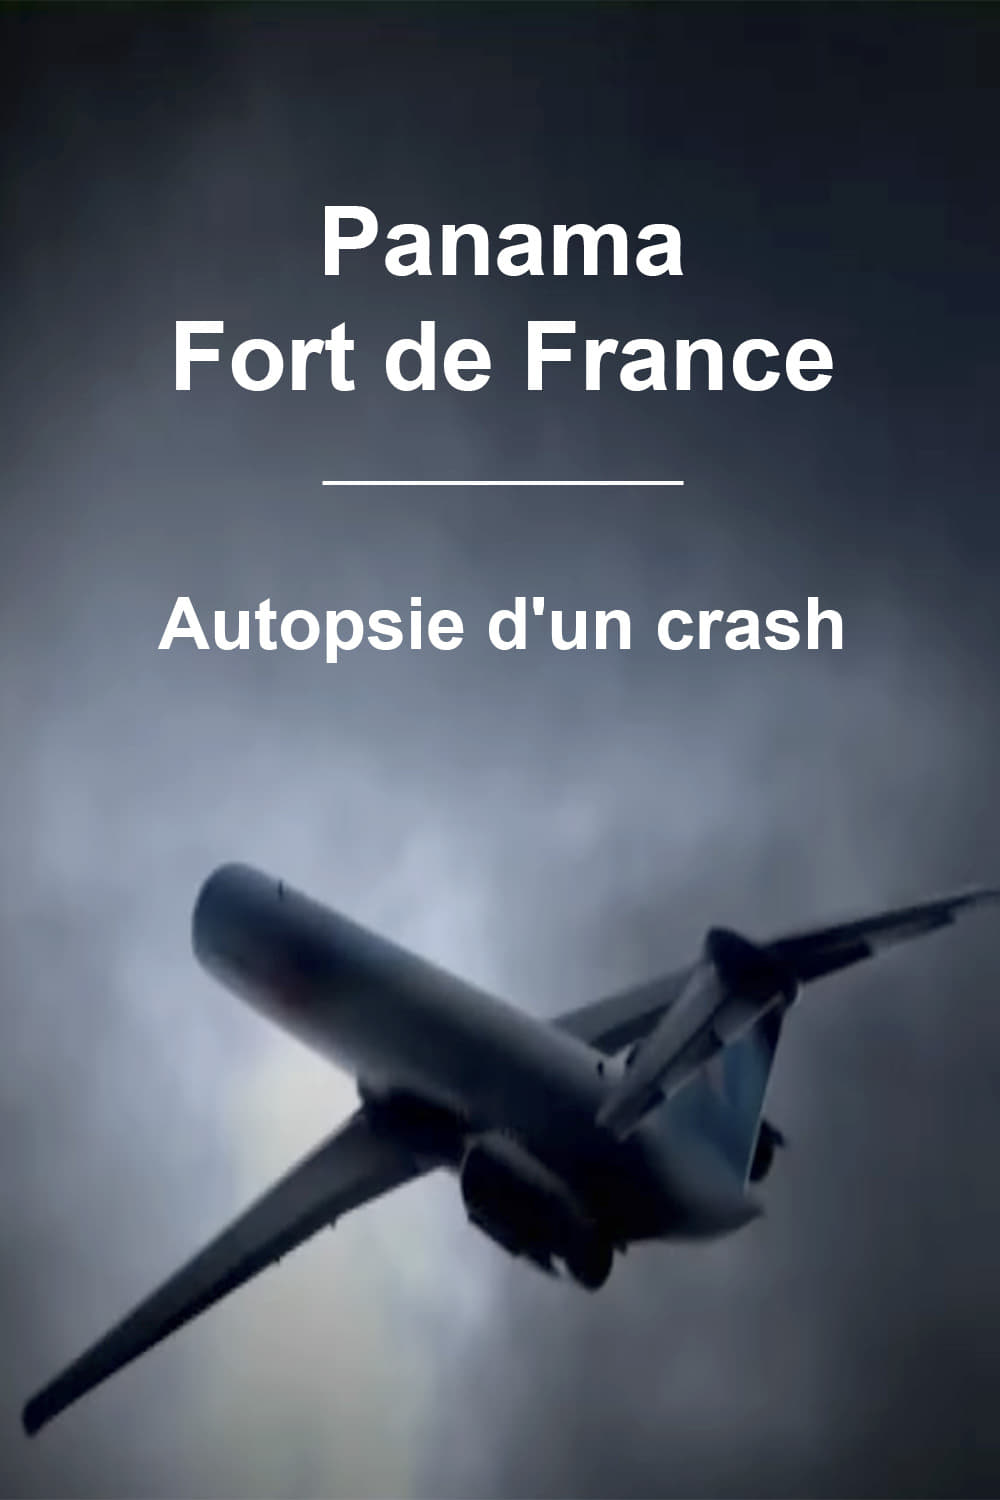 Panama - Fort de France : Autopsie d'un crash